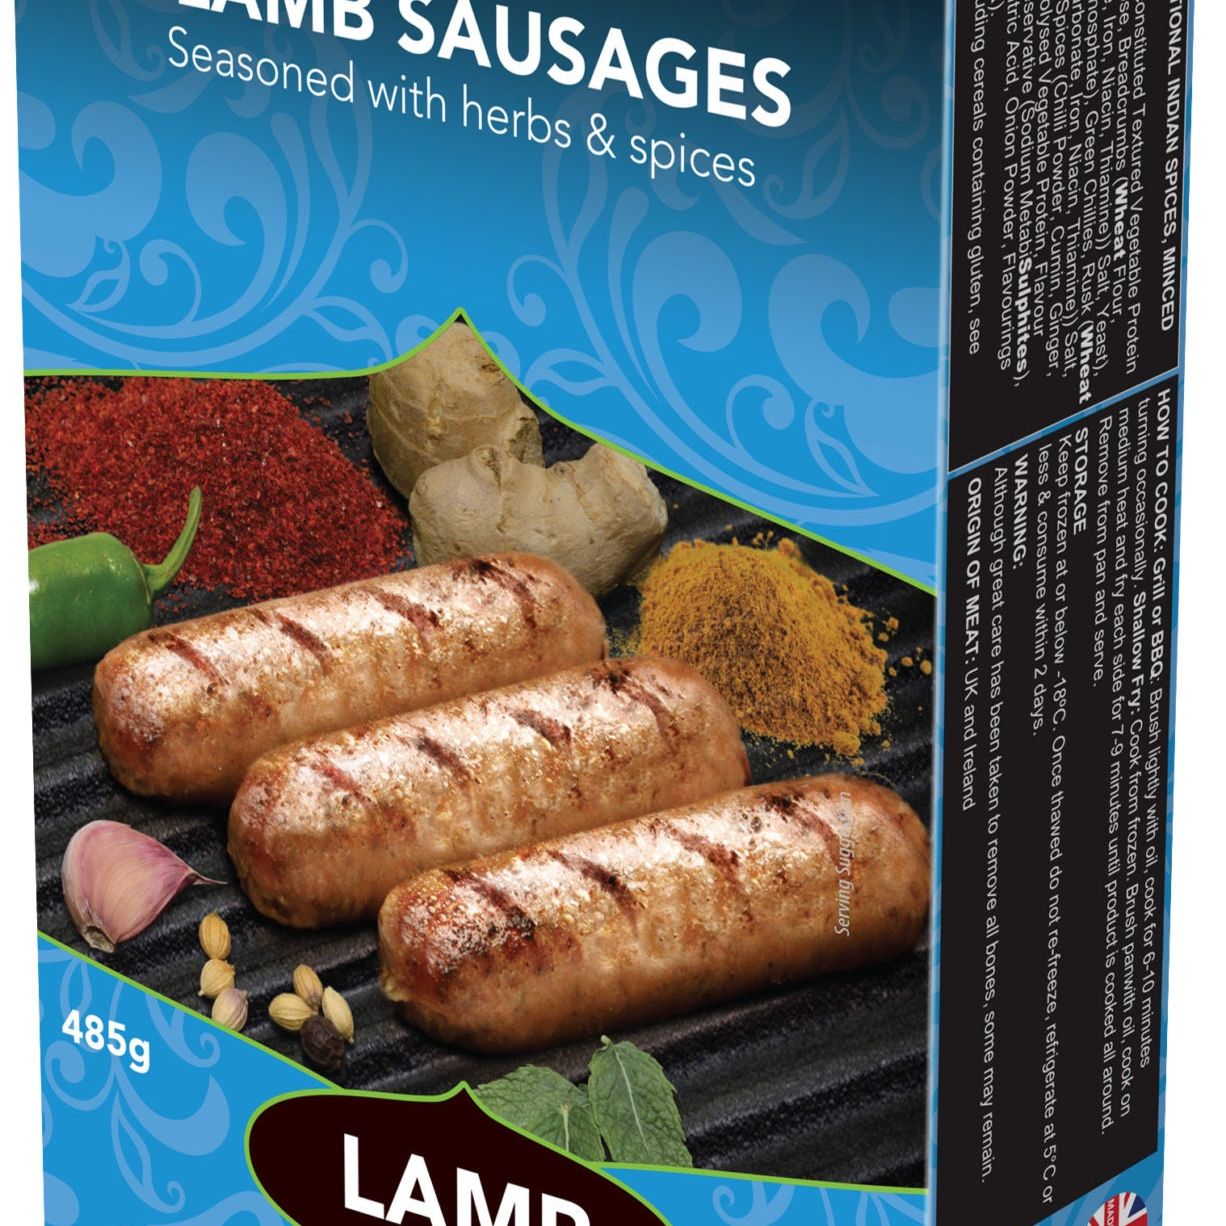 KQF Lamb Sausages